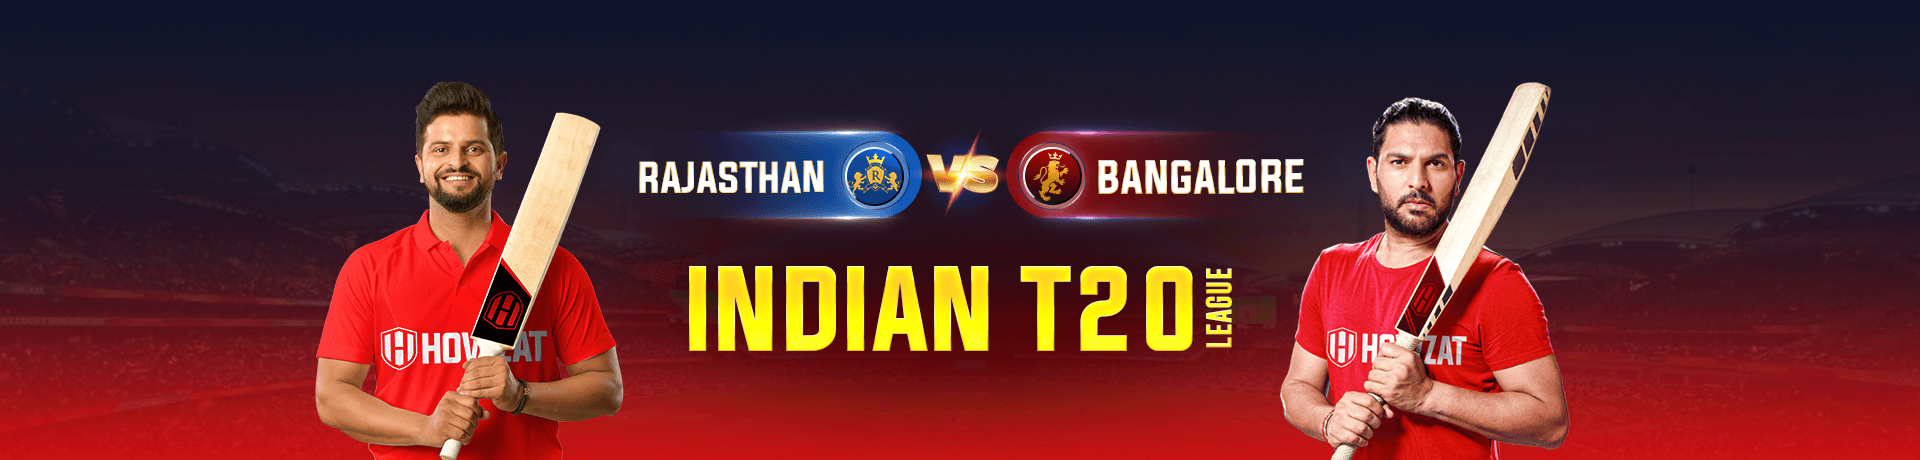 Delhi vs Rajasthan Indian T20 League